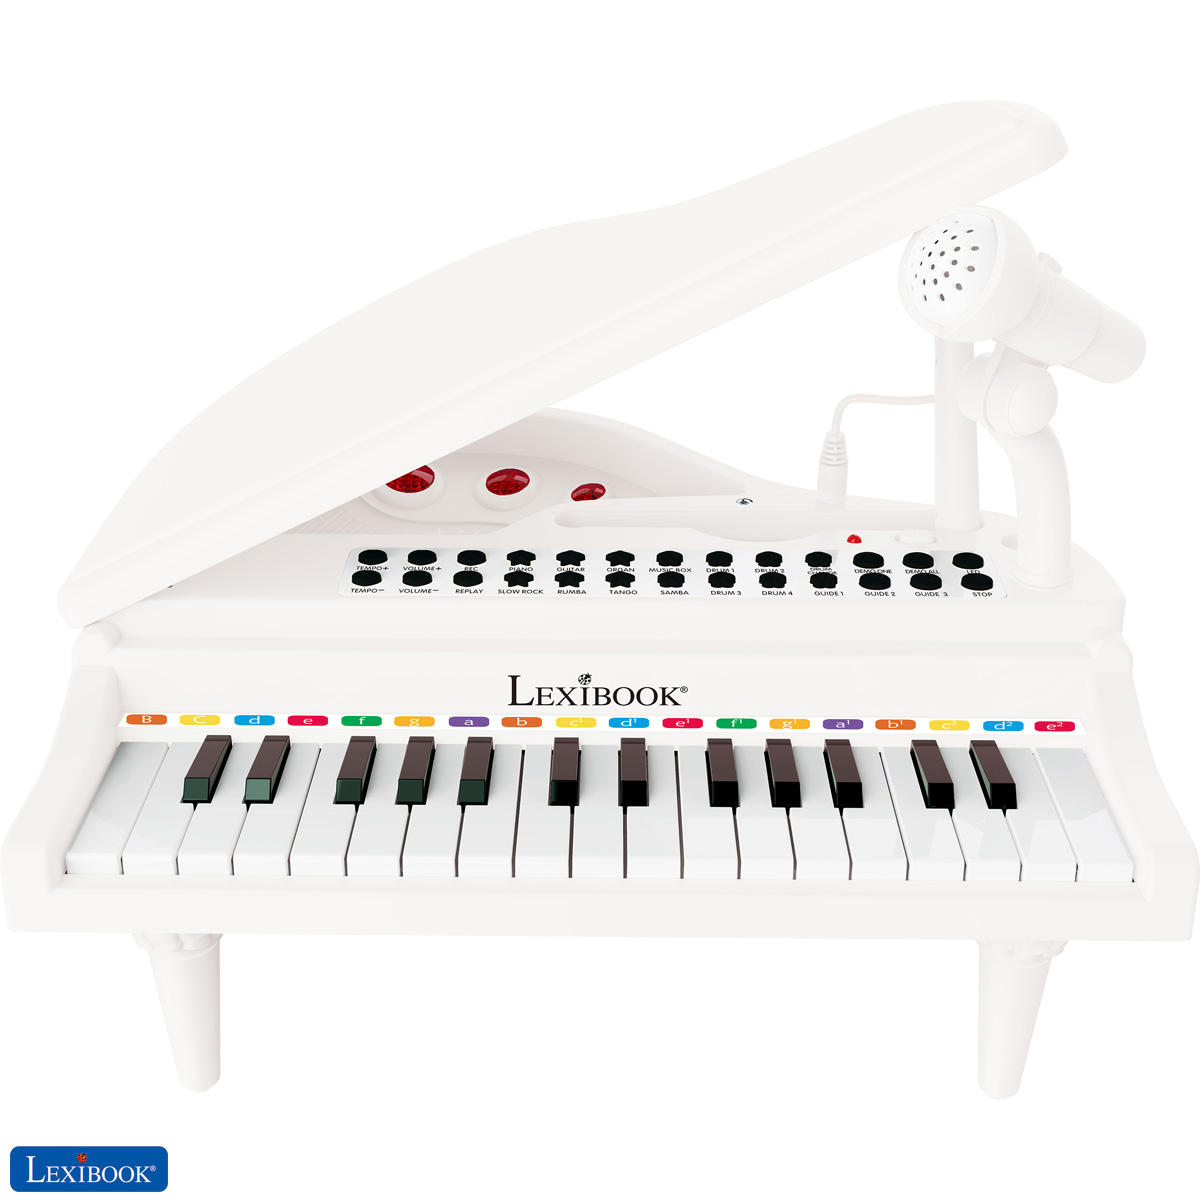 Stream [Télécharger le livre] Partitions pour piano facile pour enfants +  Mini-cours « Comment jouer du from Lipafeka.hana7